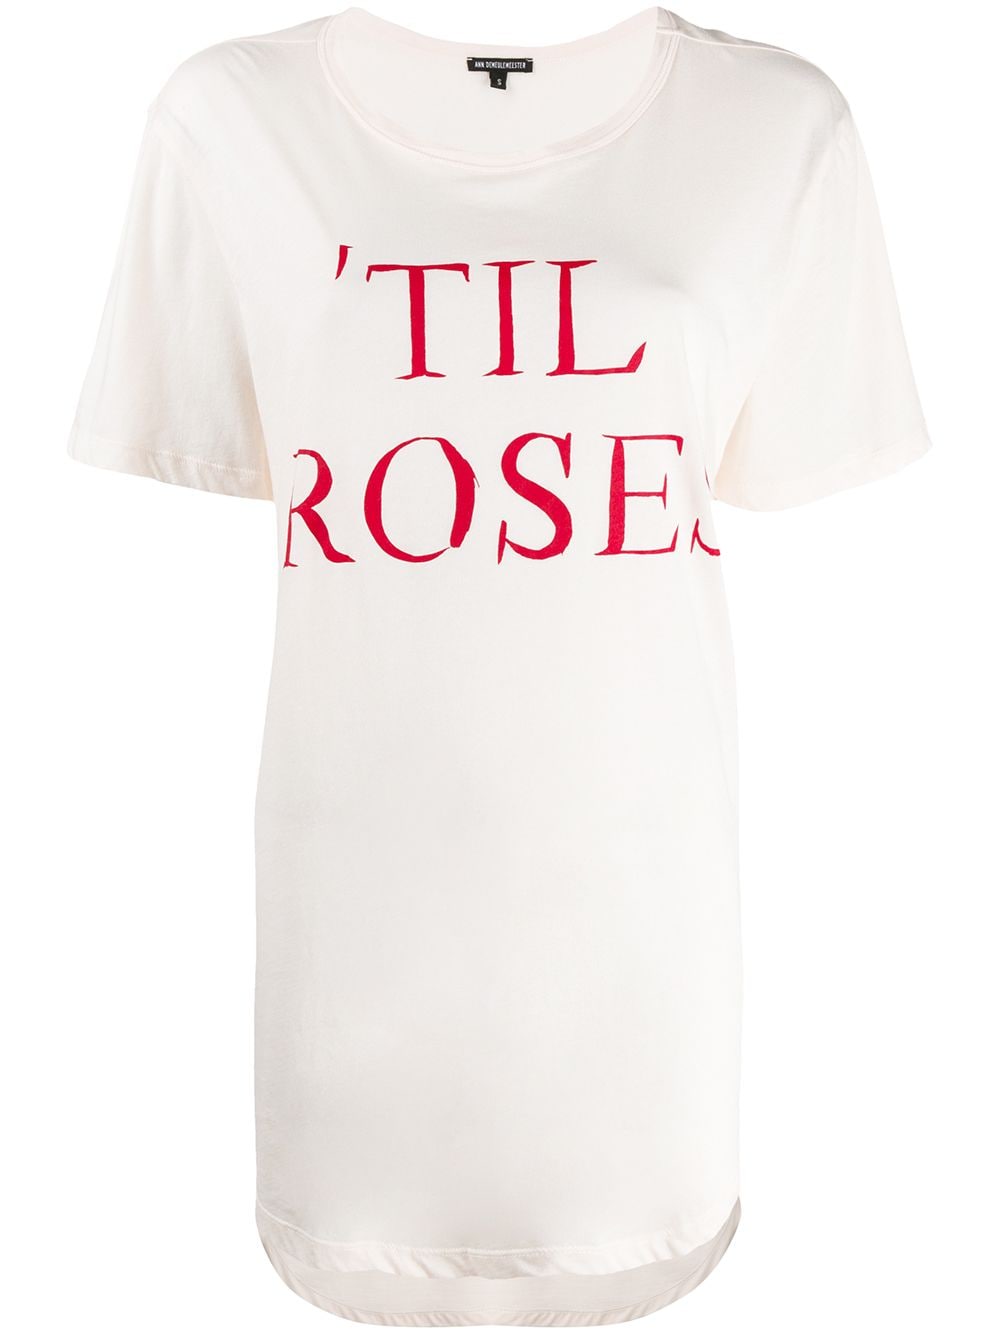 Ann Demeulemeester 'Til Rose T-shirt - Pink von Ann Demeulemeester